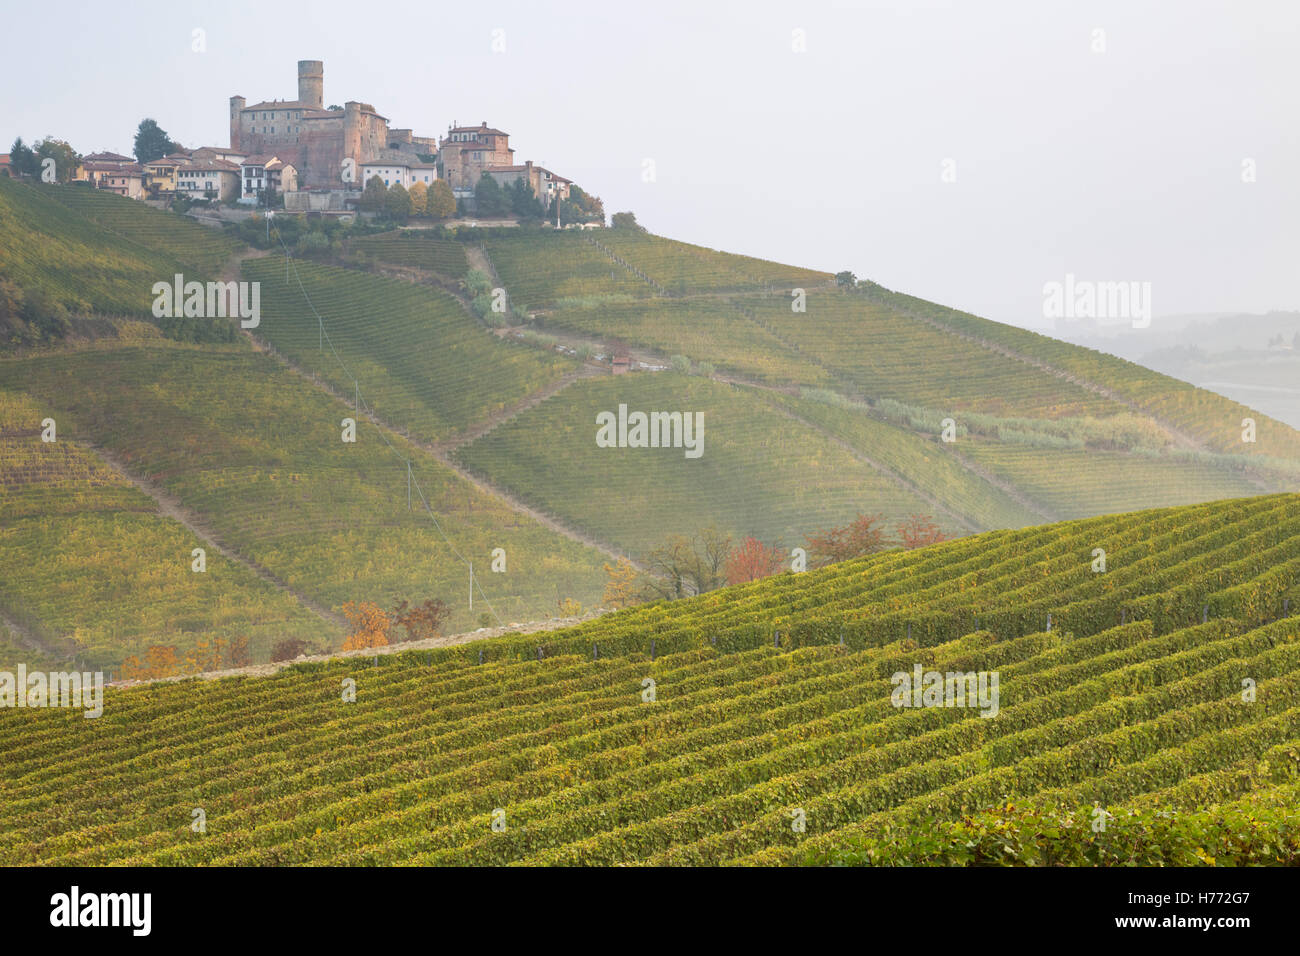 Vista de Castiglione Falletto desde los viñedos de la zona, Langhe, distrito de Cuneo, Piamonte, Italia. Foto de stock